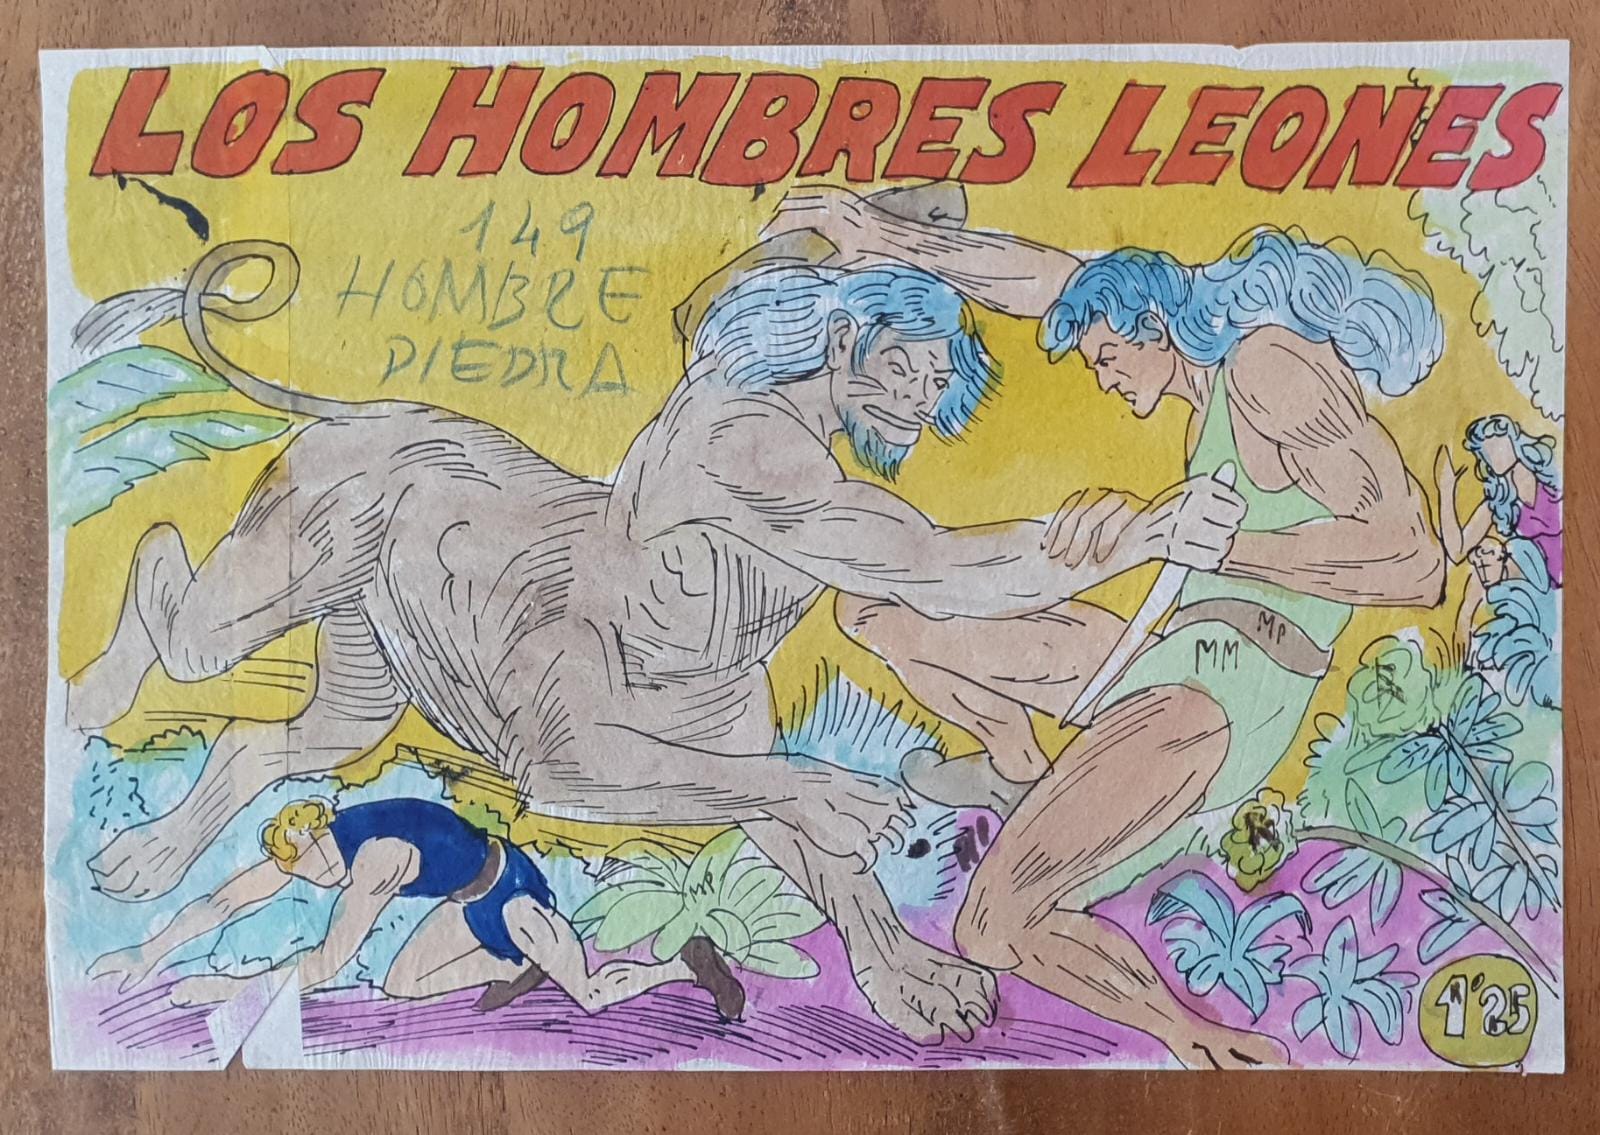 El Hombre de Piedra nº 149. Dibujos originales de Gago. 10 hojas (32x24) + portada + P. color